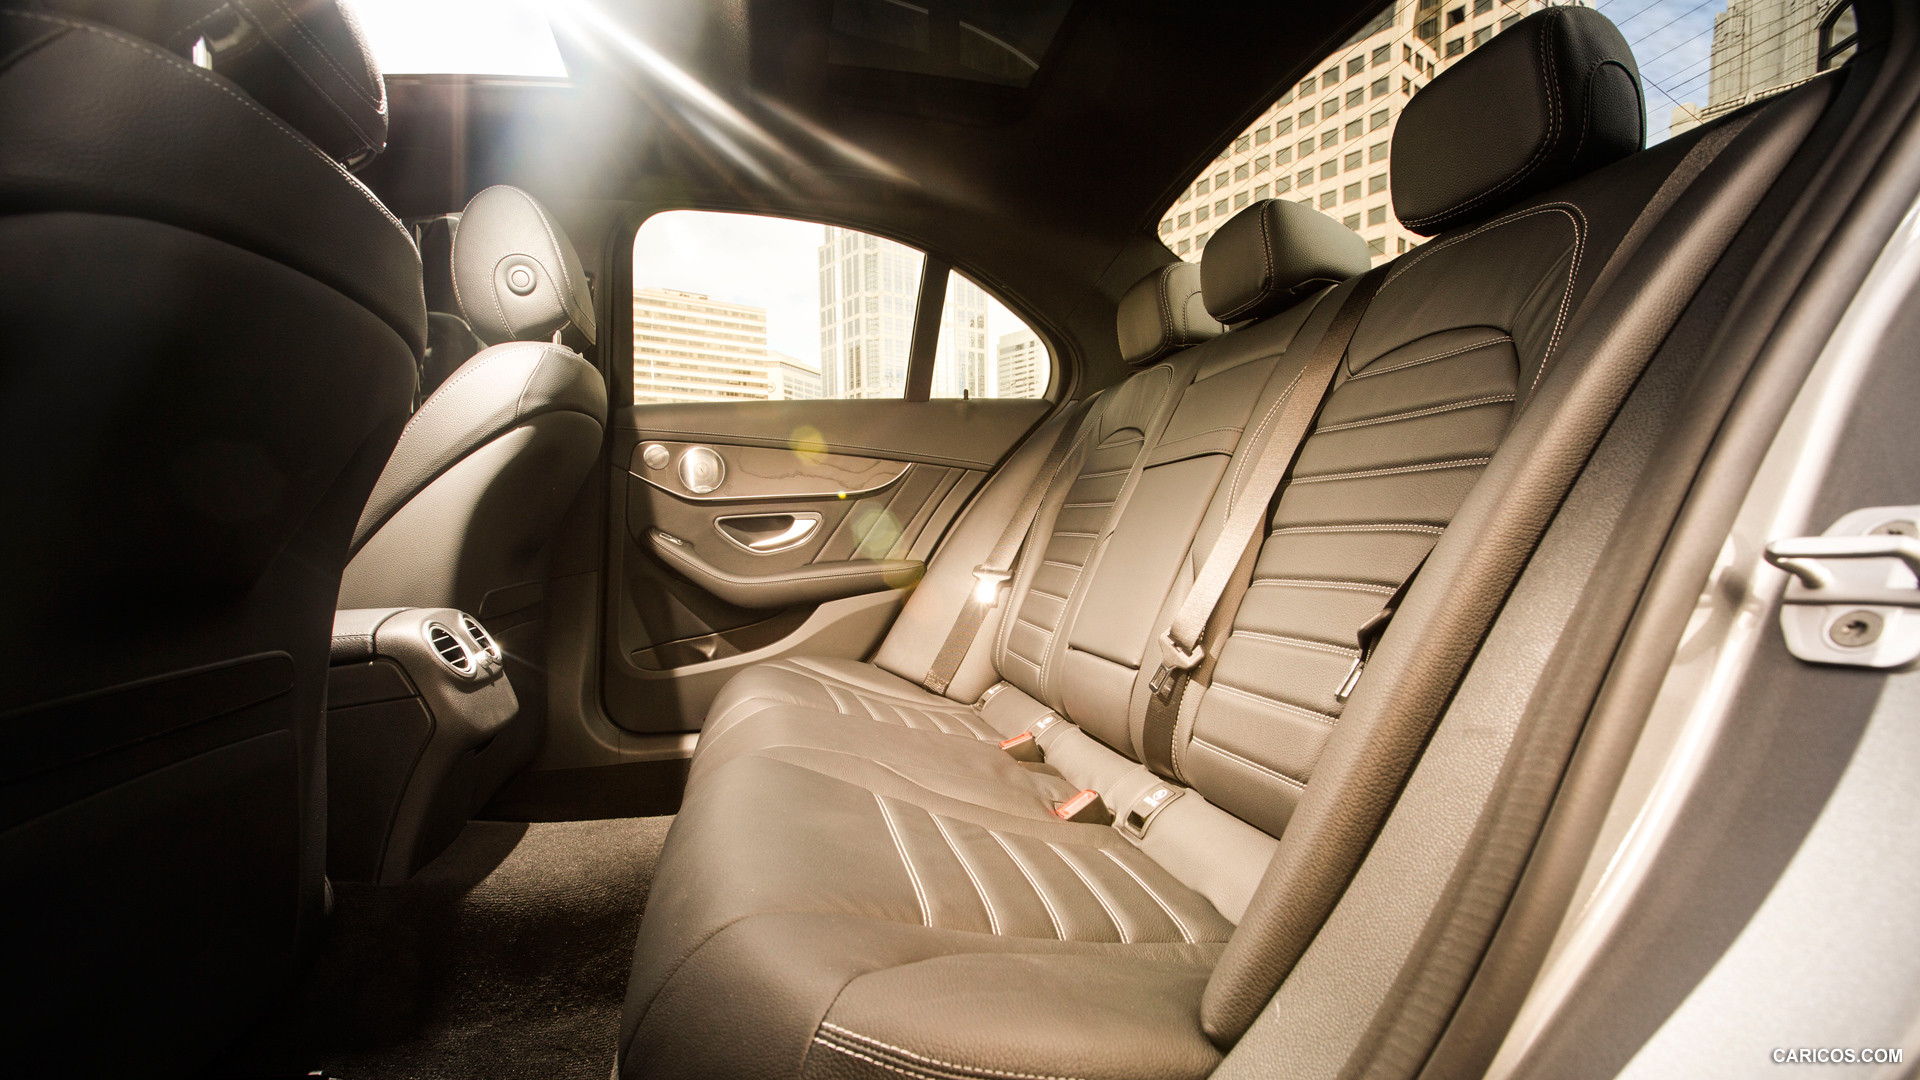 2015 Mercedes-Benz C-Class C300 4MATIC (US-Spec)  - Interior Rear Seats, #82 of 156